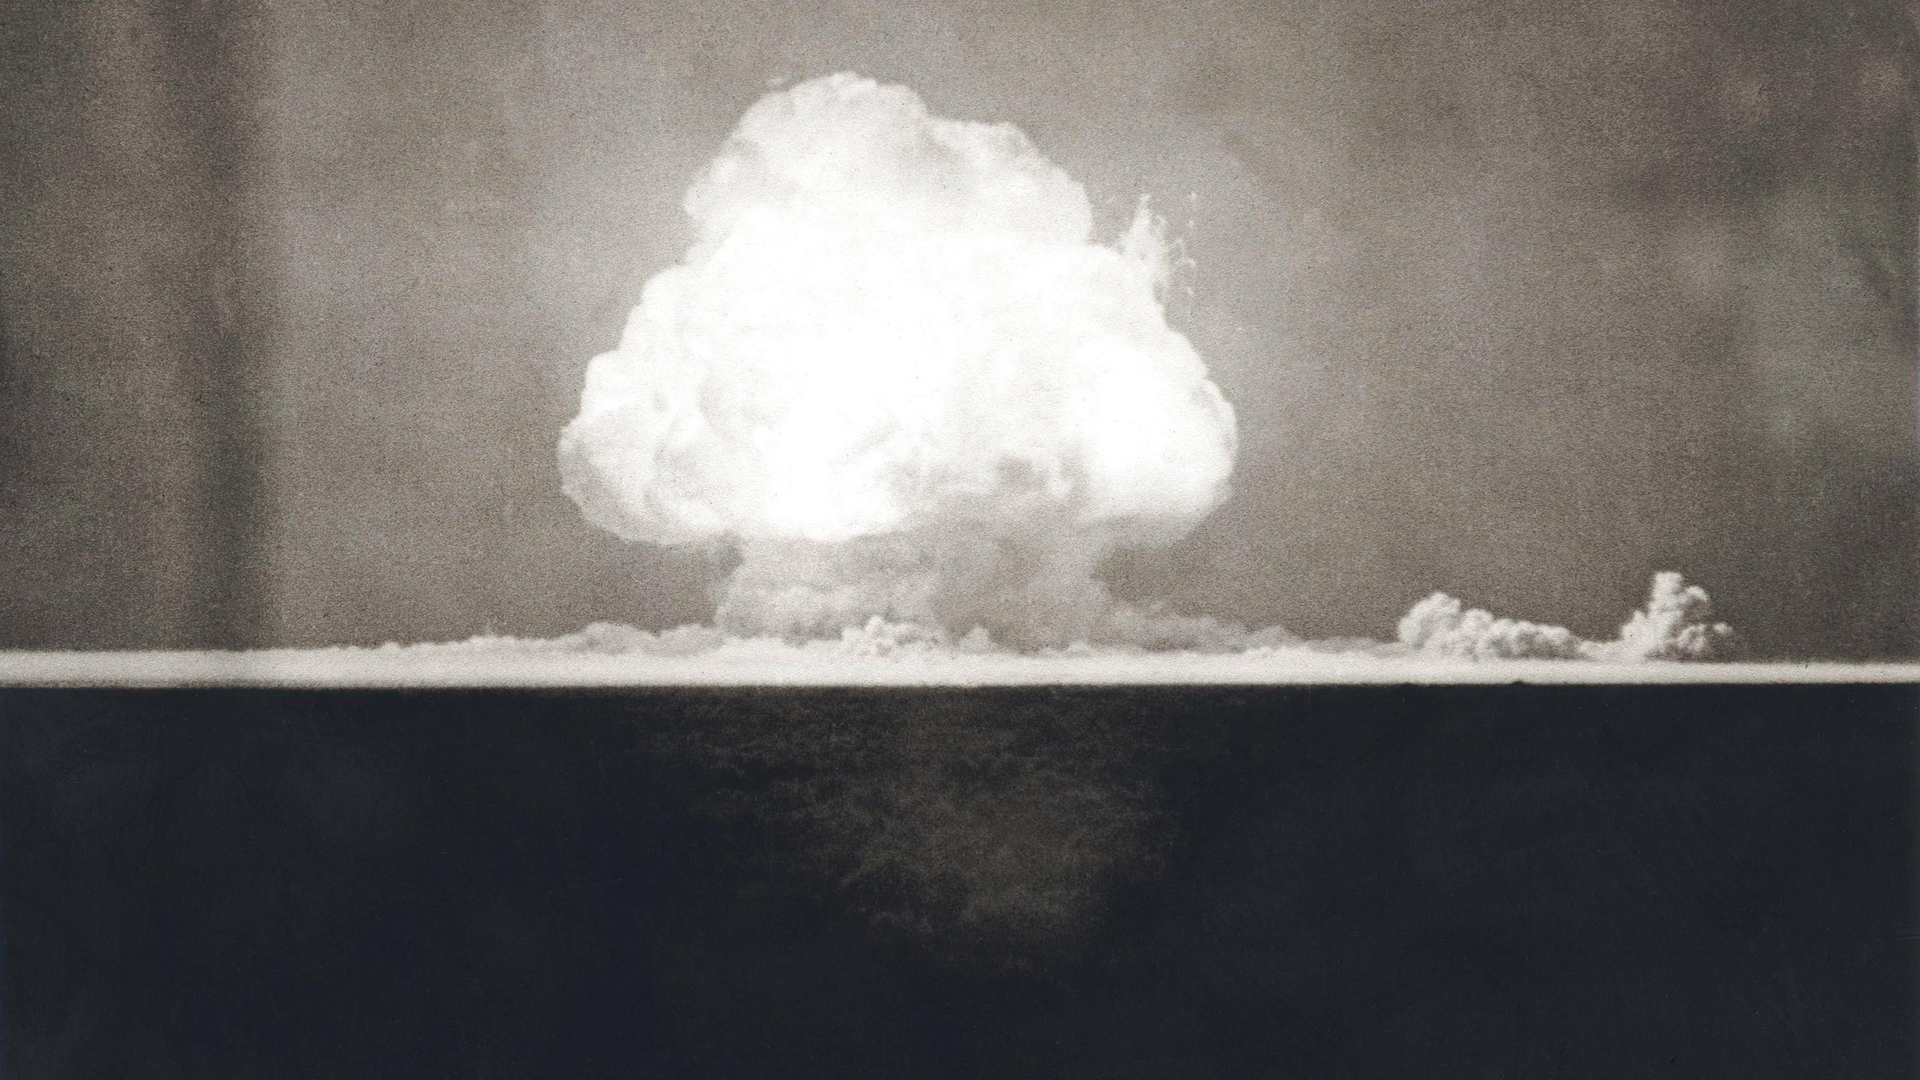 Primera explosión atómica el 16 de julio de 1945. Fotografía tomada 9 segundos después de la detonación inicial de Trinity que muestra la nube en forma de hongo. Proyecto Manhattan, Segunda Guerra Mundial. Alamogordo, Nuevo México.